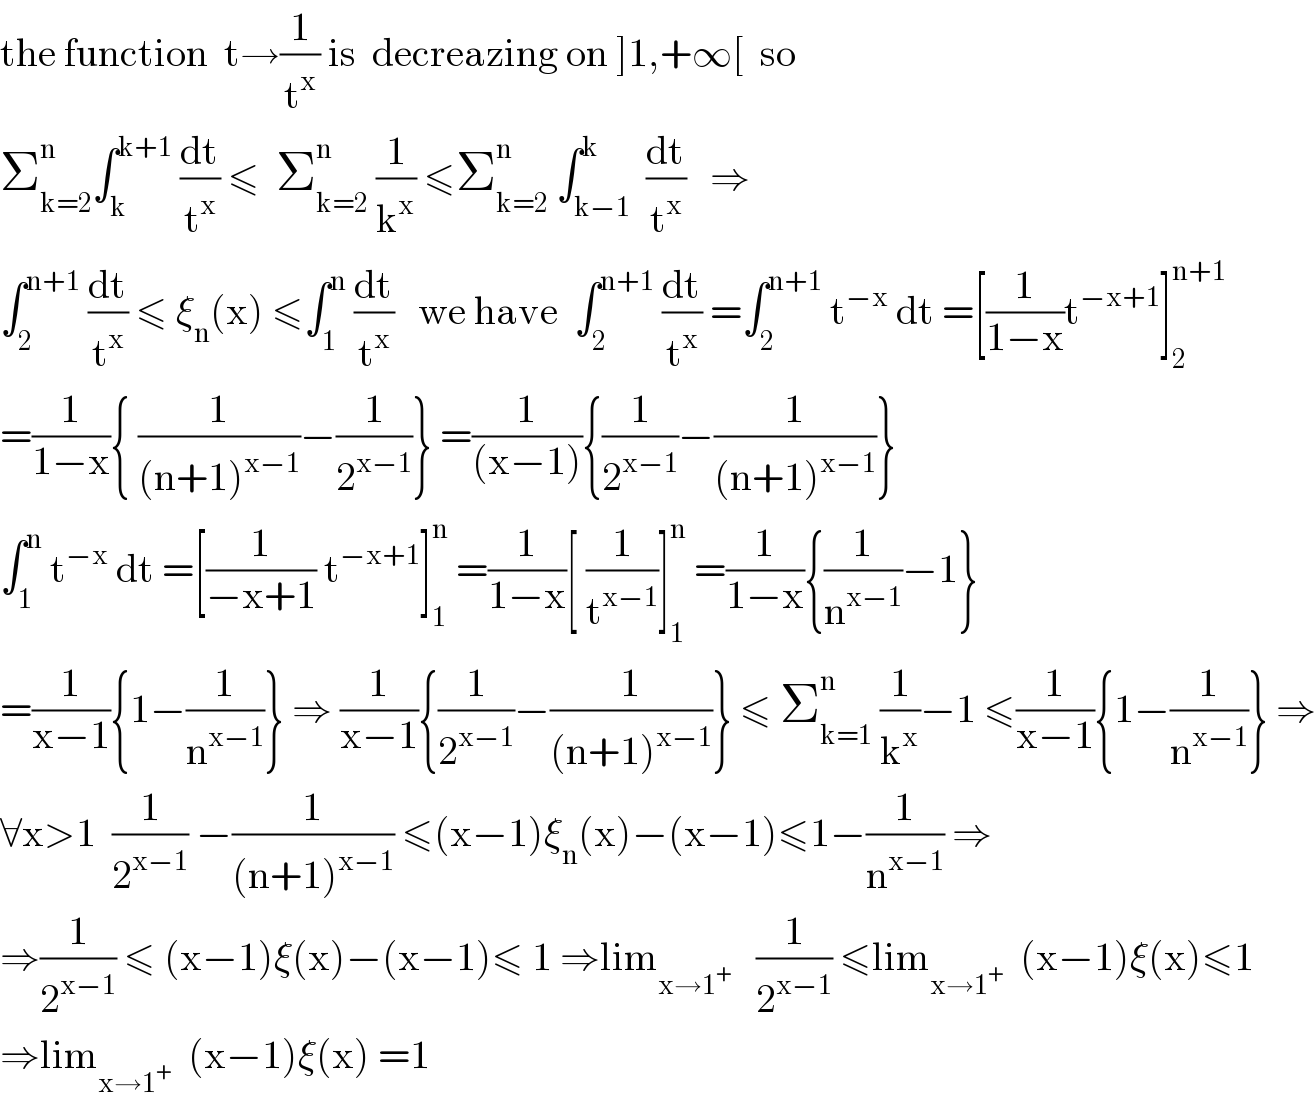 the function  t→(1/t^x ) is  decreazing on ]1,+∞[  so  Σ_(k=2) ^n ∫_k ^(k+1)  (dt/t^x ) ≤  Σ_(k=2) ^n  (1/k^x ) ≤Σ_(k=2) ^n  ∫_(k−1) ^k  (dt/t^x )   ⇒  ∫_2 ^(n+1)  (dt/t^x ) ≤ ξ_n (x) ≤∫_1 ^n  (dt/t^x )   we have  ∫_2 ^(n+1)  (dt/t^x ) =∫_2 ^(n+1)  t^(−x)  dt =[(1/(1−x))t^(−x+1) ]_2 ^(n+1)   =(1/(1−x)){ (1/((n+1)^(x−1) ))−(1/2^(x−1) )} =(1/((x−1))){(1/2^(x−1) )−(1/((n+1)^(x−1) ))}  ∫_1 ^n  t^(−x)  dt =[(1/(−x+1)) t^(−x+1) ]_1 ^n  =(1/(1−x))[ (1/t^(x−1) )]_1 ^n  =(1/(1−x)){(1/n^(x−1) )−1}  =(1/(x−1)){1−(1/n^(x−1) )} ⇒ (1/(x−1)){(1/2^(x−1) )−(1/((n+1)^(x−1) ))} ≤ Σ_(k=1) ^n  (1/k^x )−1 ≤(1/(x−1)){1−(1/n^(x−1) )} ⇒  ∀x>1  (1/2^(x−1) ) −(1/((n+1)^(x−1) )) ≤(x−1)ξ_n (x)−(x−1)≤1−(1/n^(x−1) ) ⇒  ⇒(1/2^(x−1) ) ≤ (x−1)ξ(x)−(x−1)≤ 1 ⇒lim_(x→1^+ )    (1/2^(x−1) ) ≤lim_(x→1^+ )   (x−1)ξ(x)≤1  ⇒lim_(x→1^+ )   (x−1)ξ(x) =1  